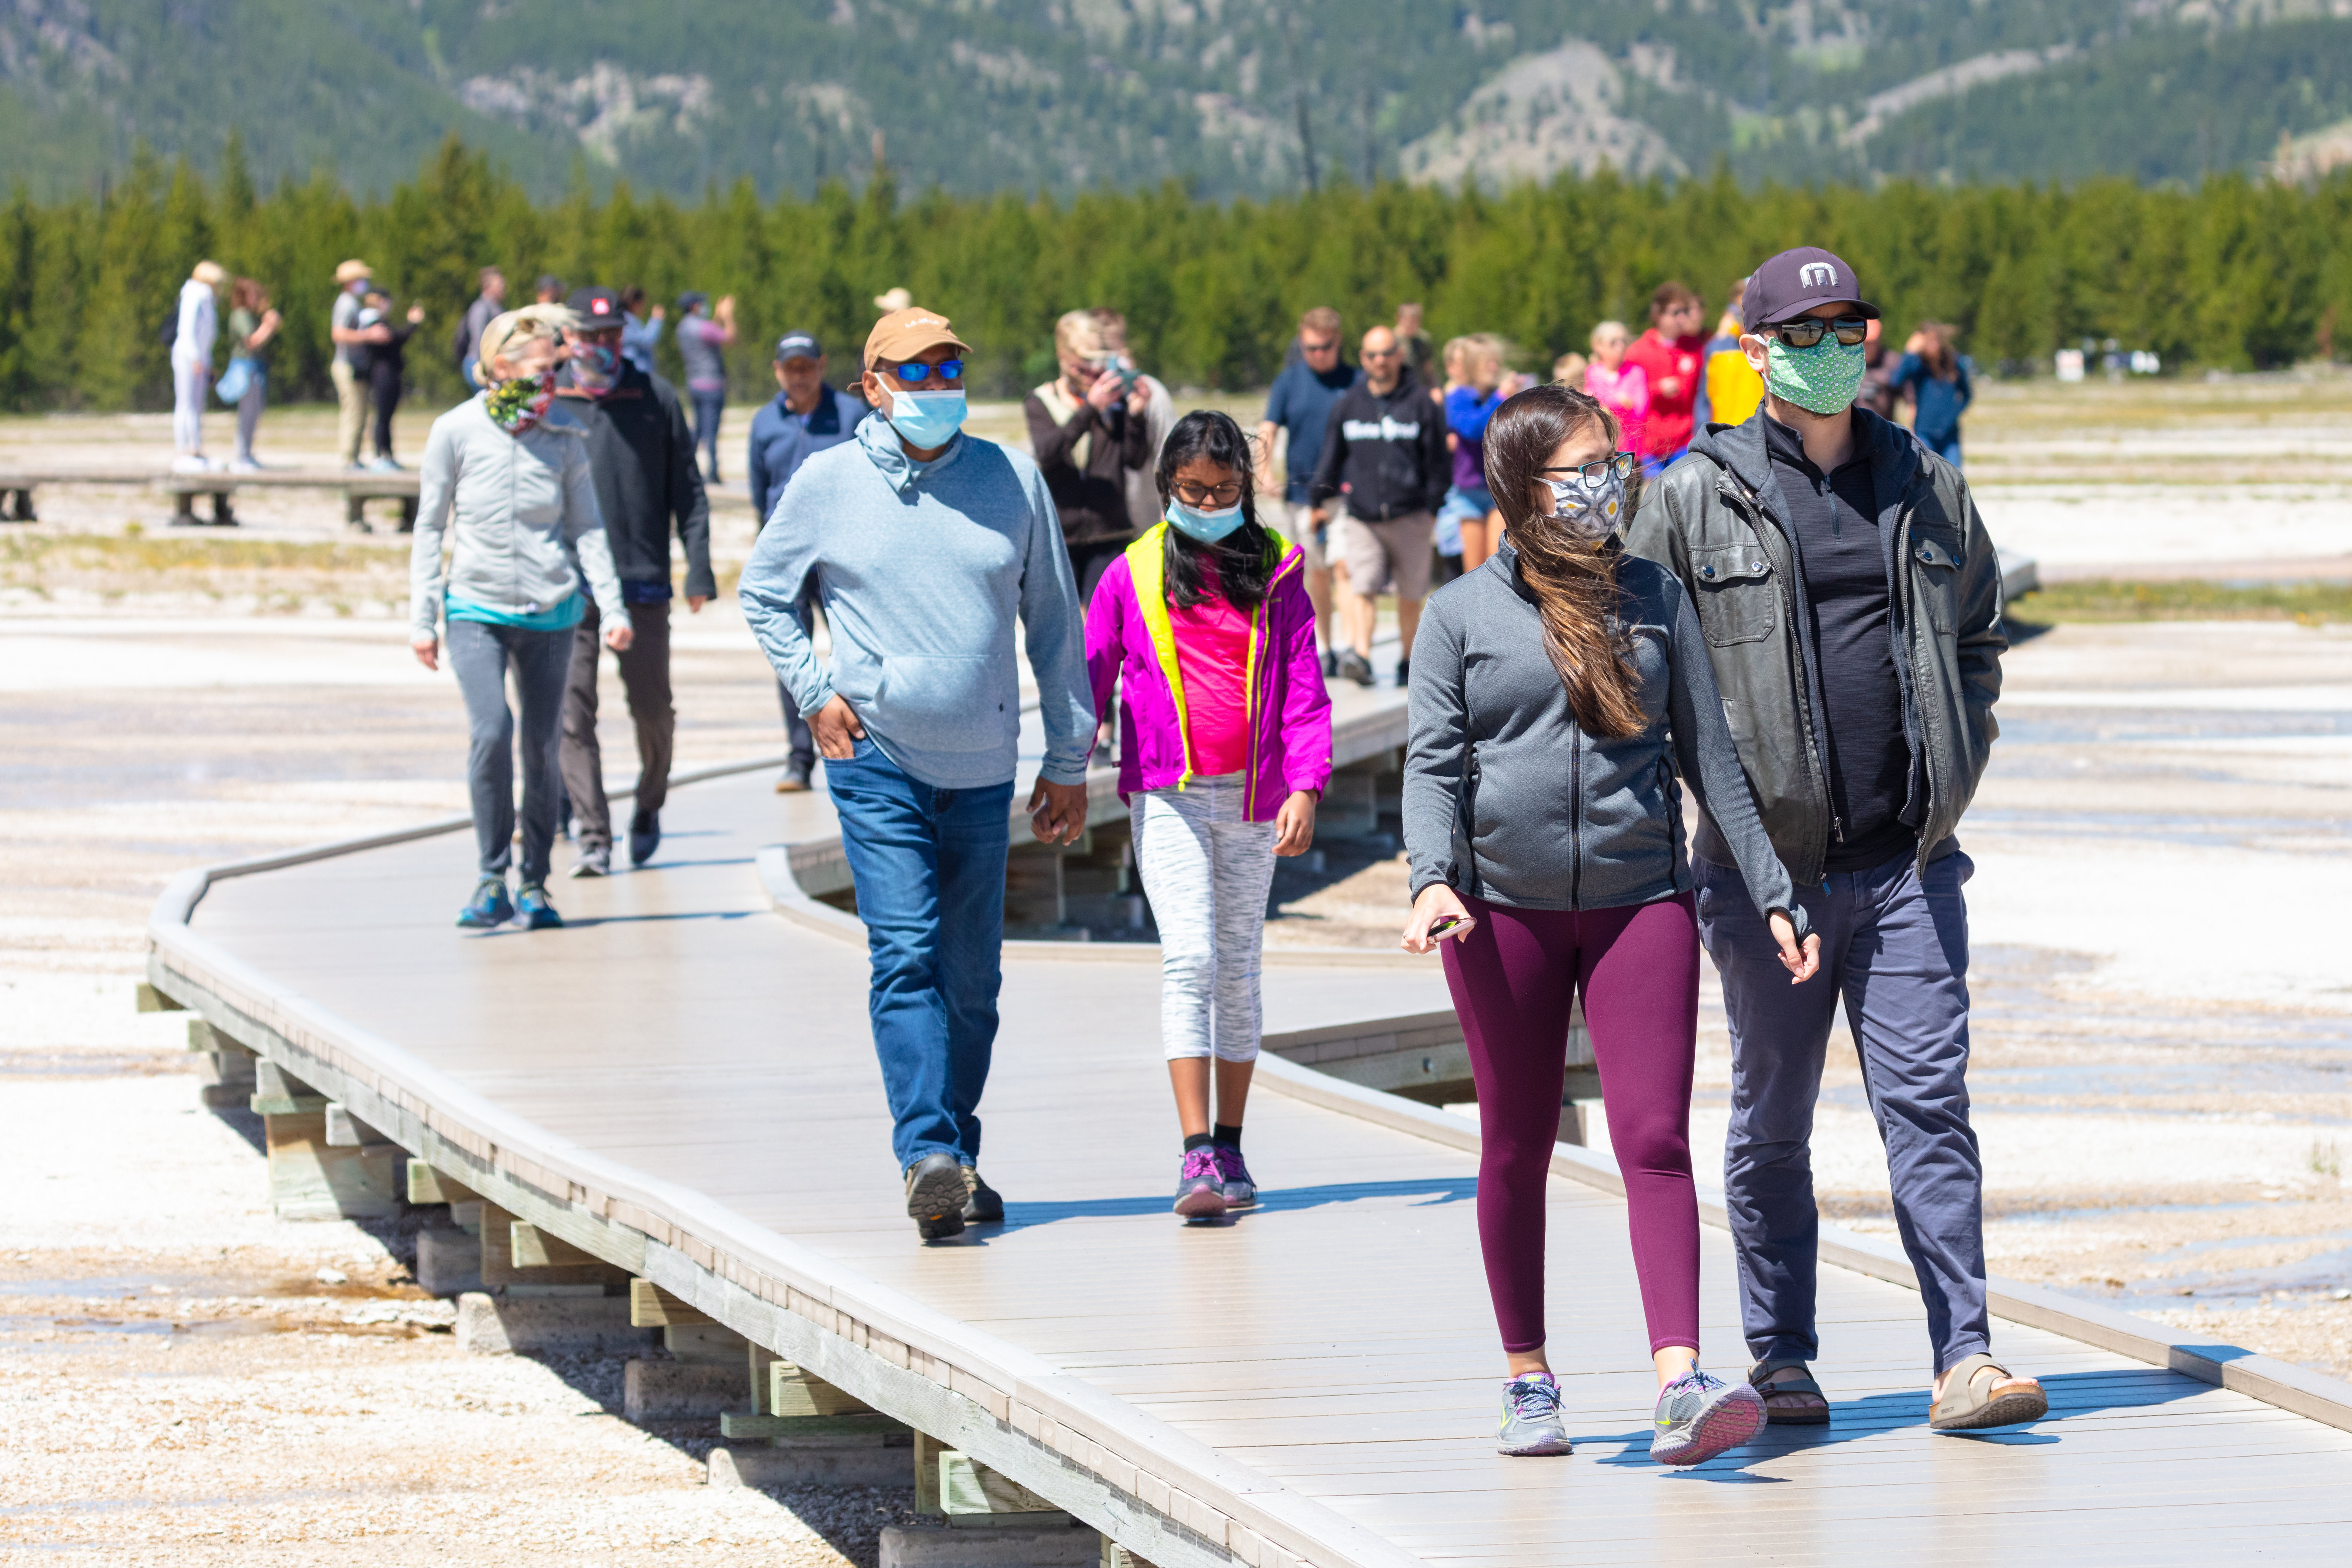 People, some wearing masks, walking on a boardwalk